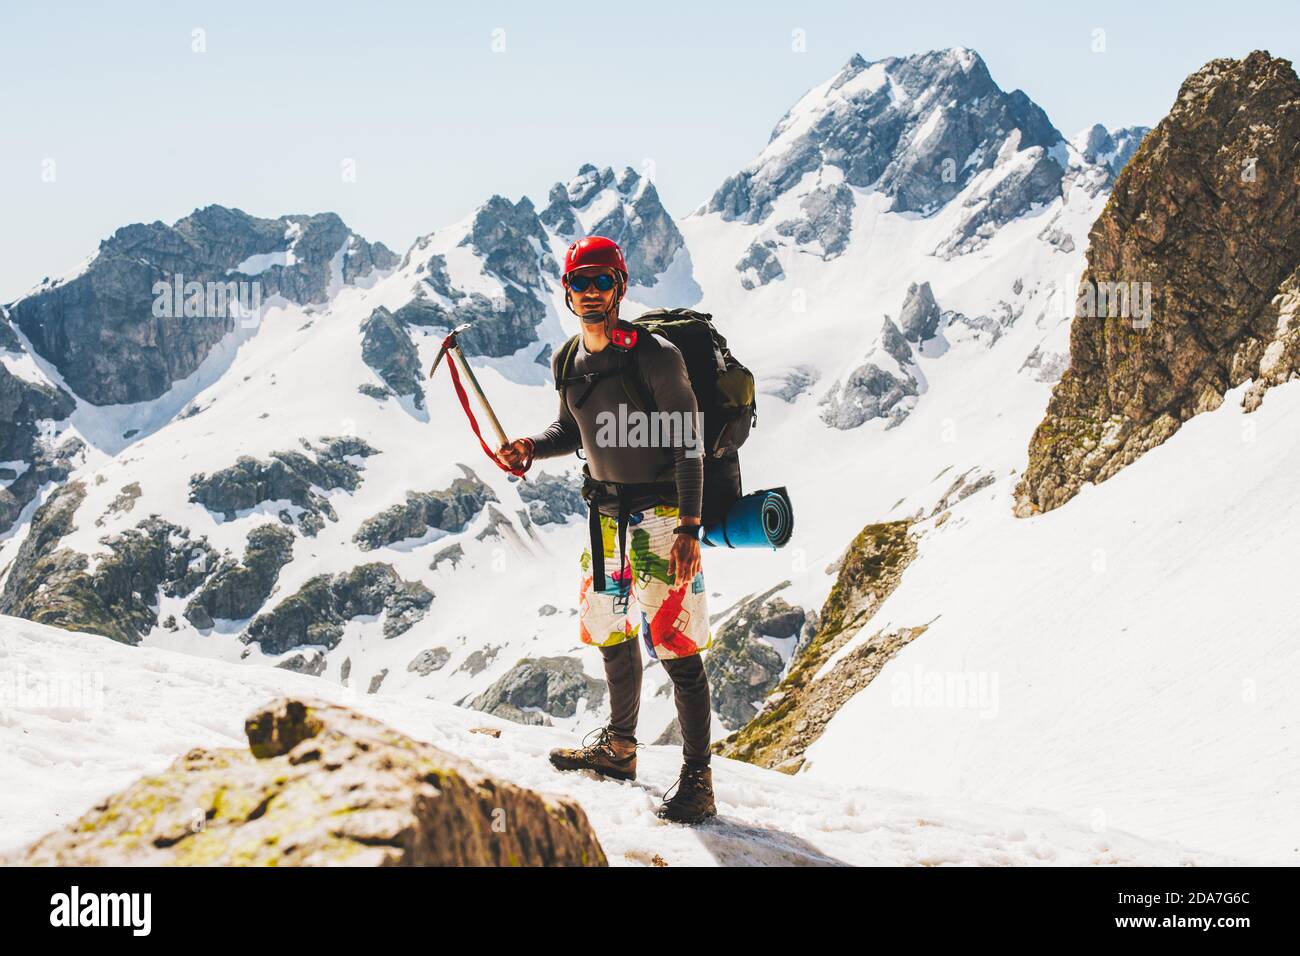 Homme grimpeur tenant la glace sur la montagne Voyage concept de style de vie aventure active vacances extrême d'alpinisme en plein air sport utilisant l'équipement d'alpinisme Banque D'Images